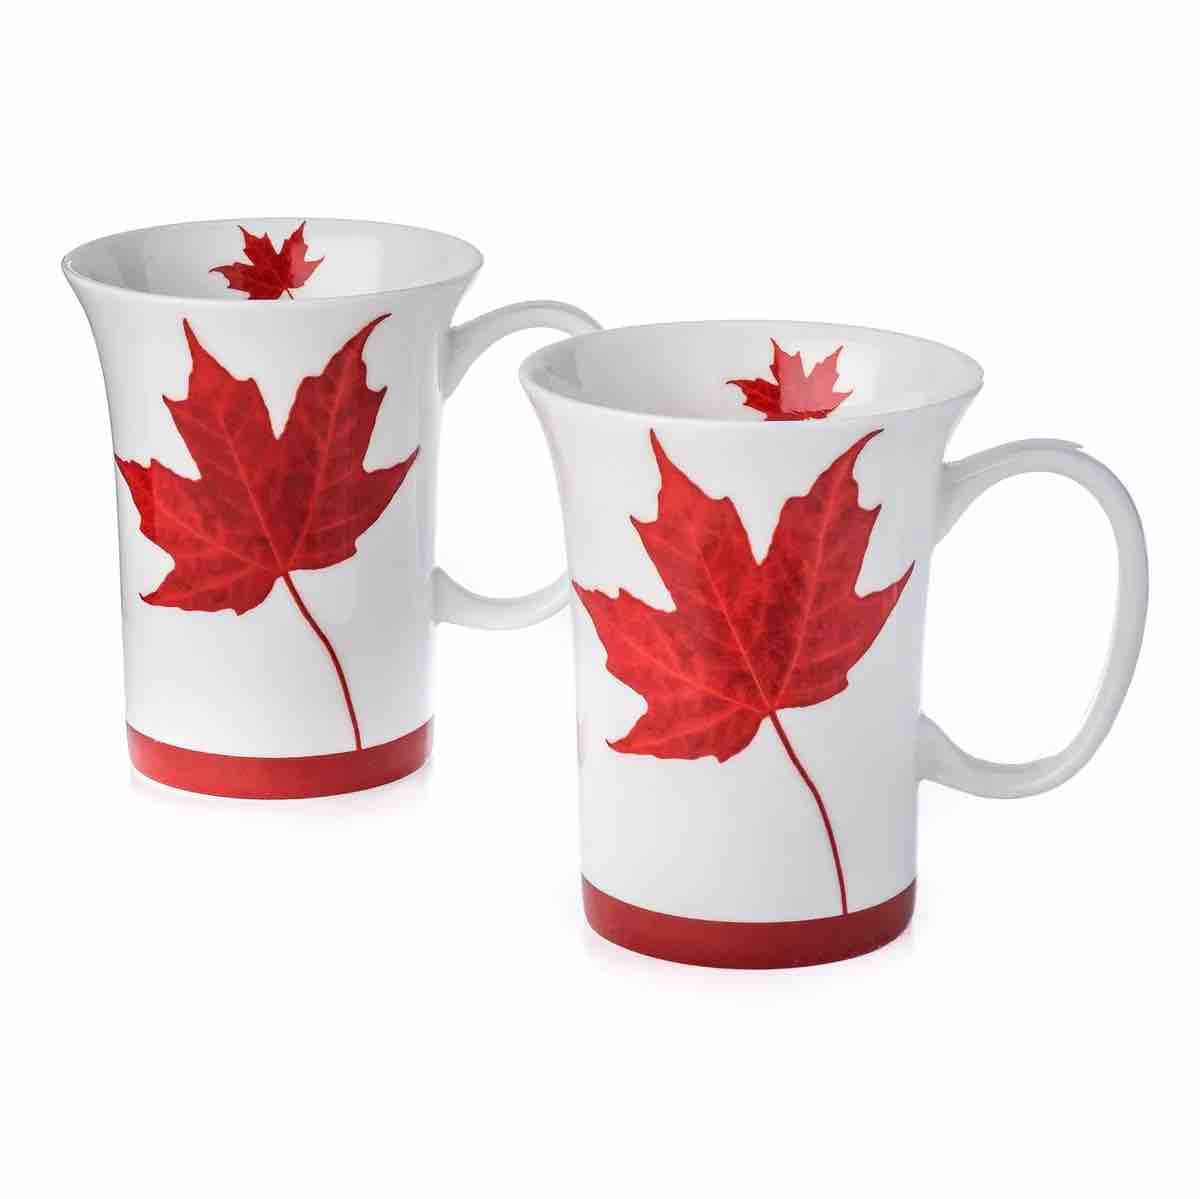 'Memories of Canada' Mug Pair